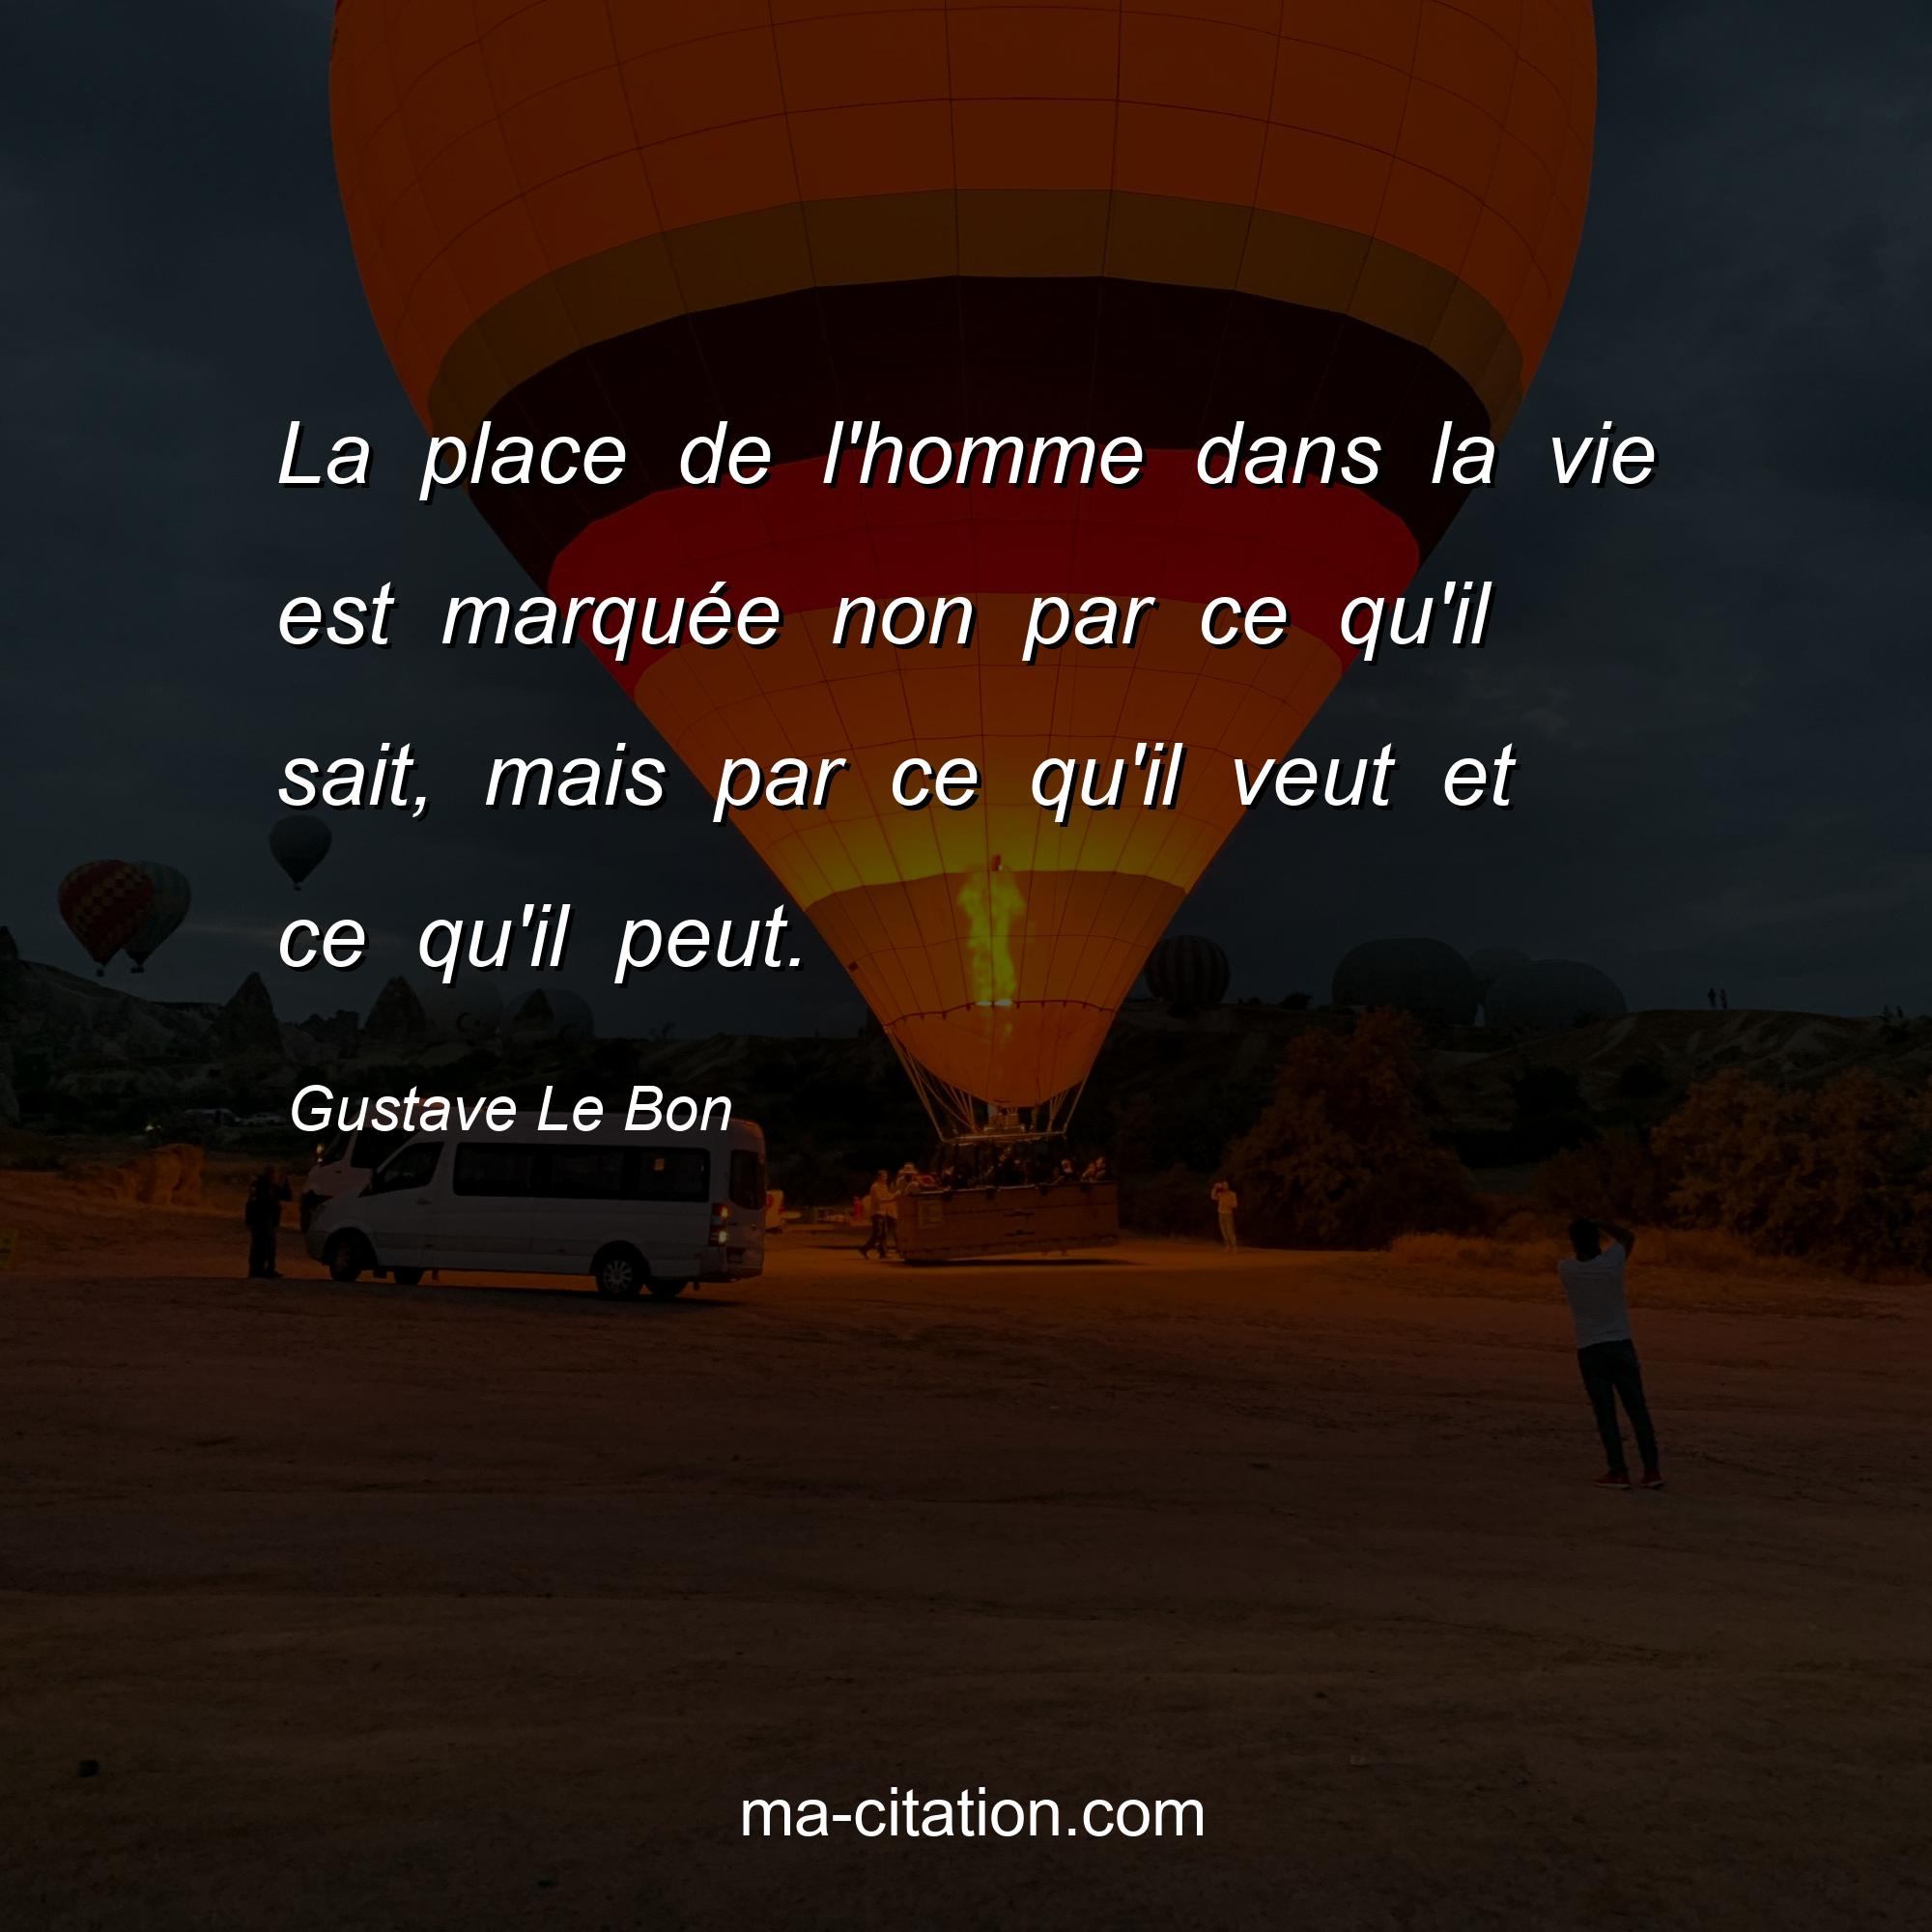 Gustave Le Bon : La place de l'homme dans la vie est marquée non par ce qu'il sait, mais par ce qu'il veut et ce qu'il peut.